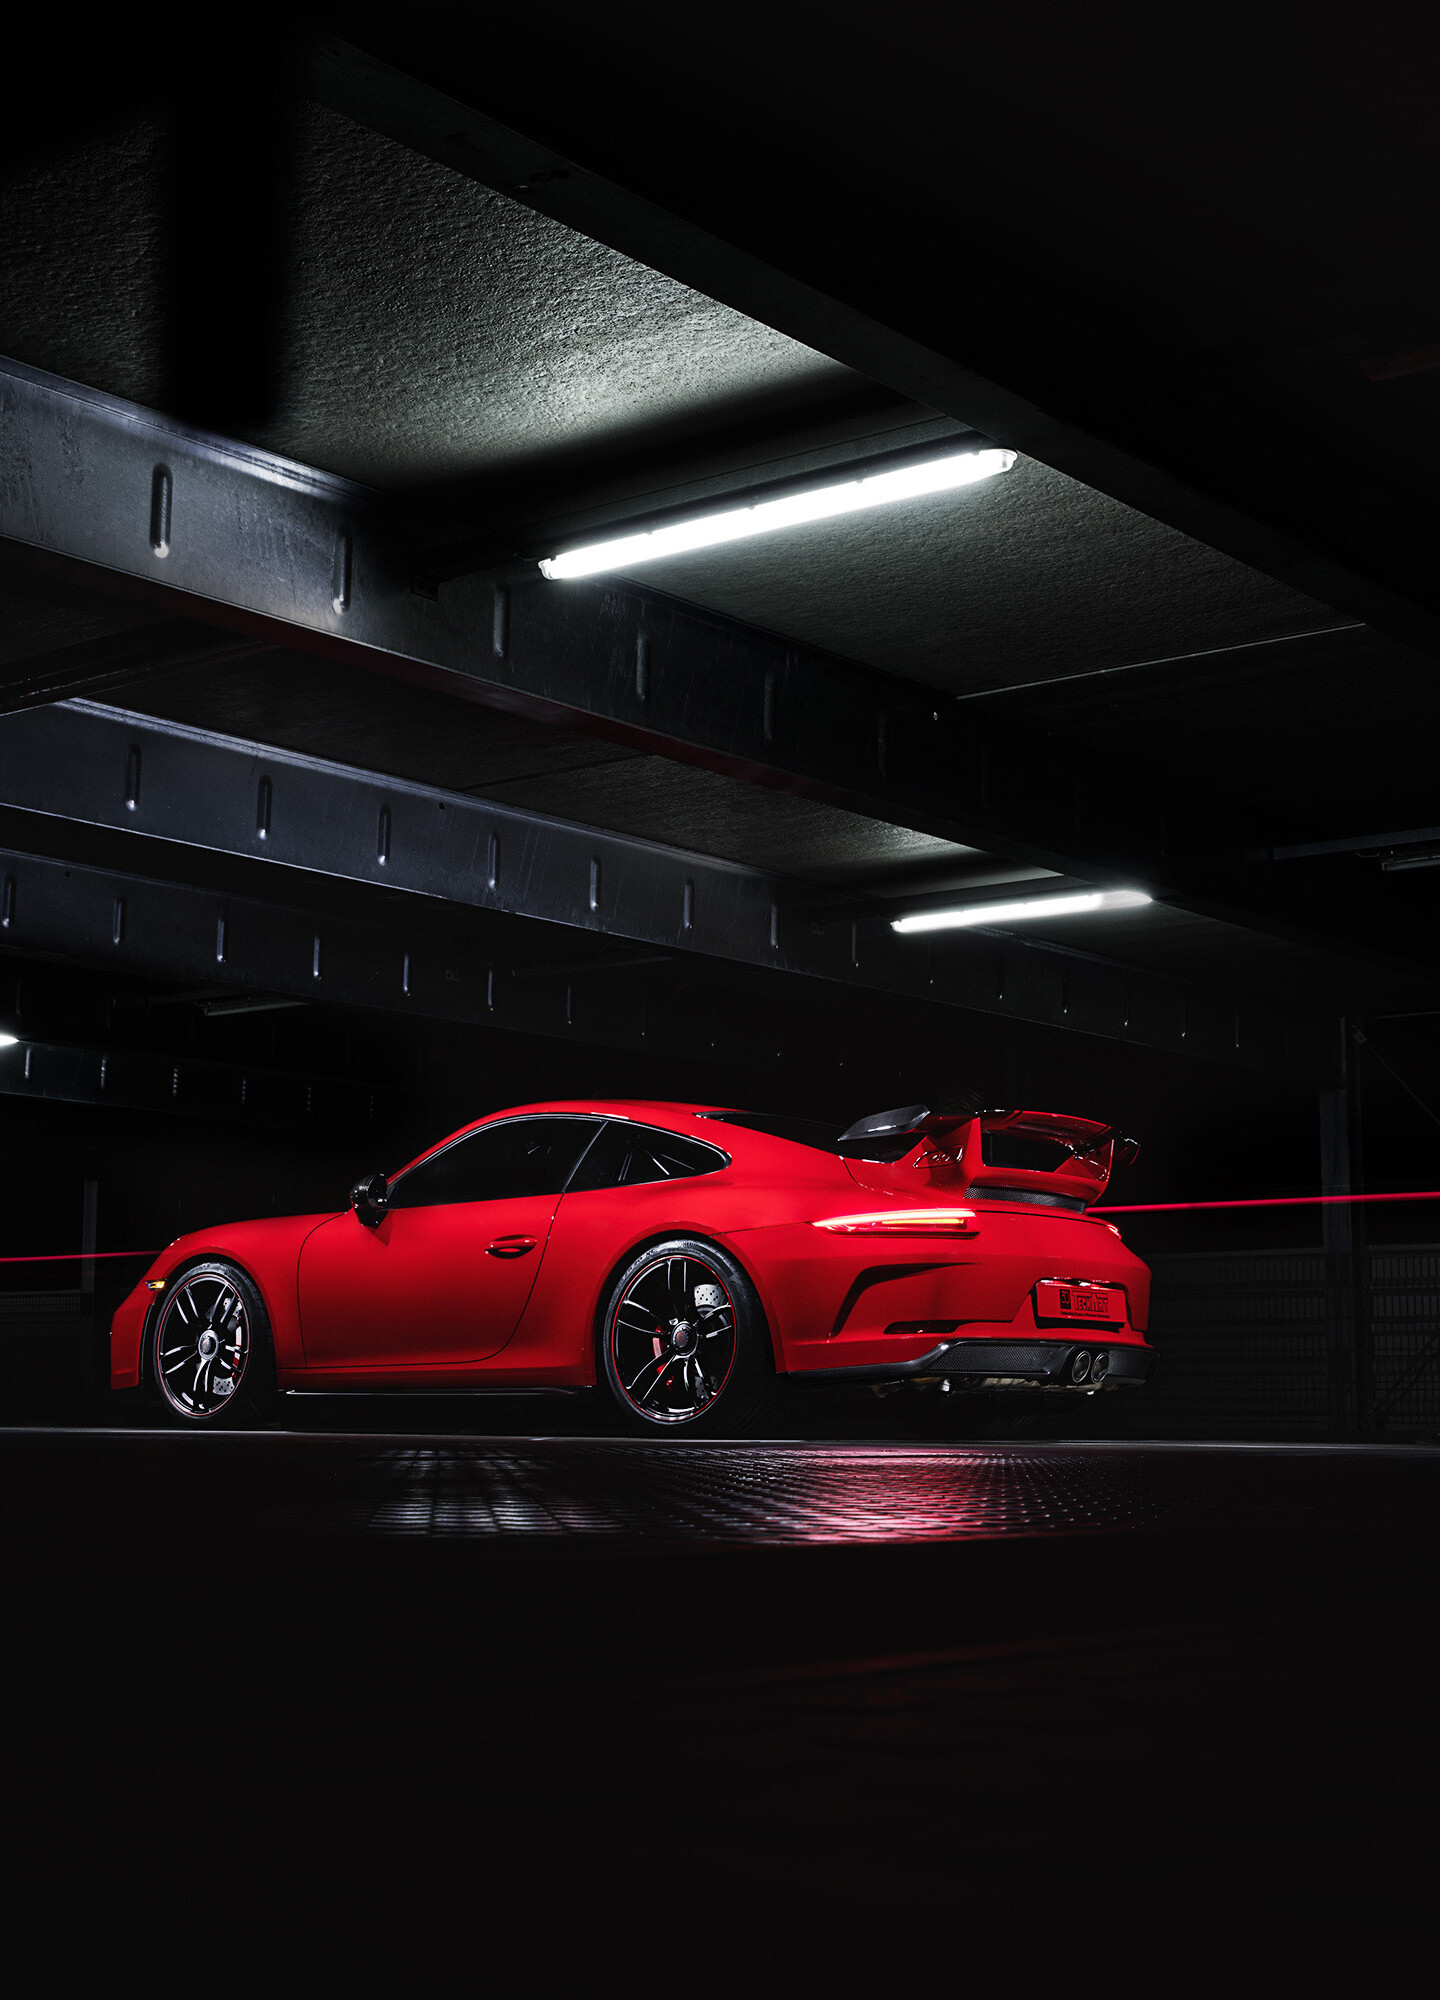 Techart Porsche 911 GT3, Red car wallpaper, Samsung Galaxy S8, HD image, 1440x2000 HD Phone